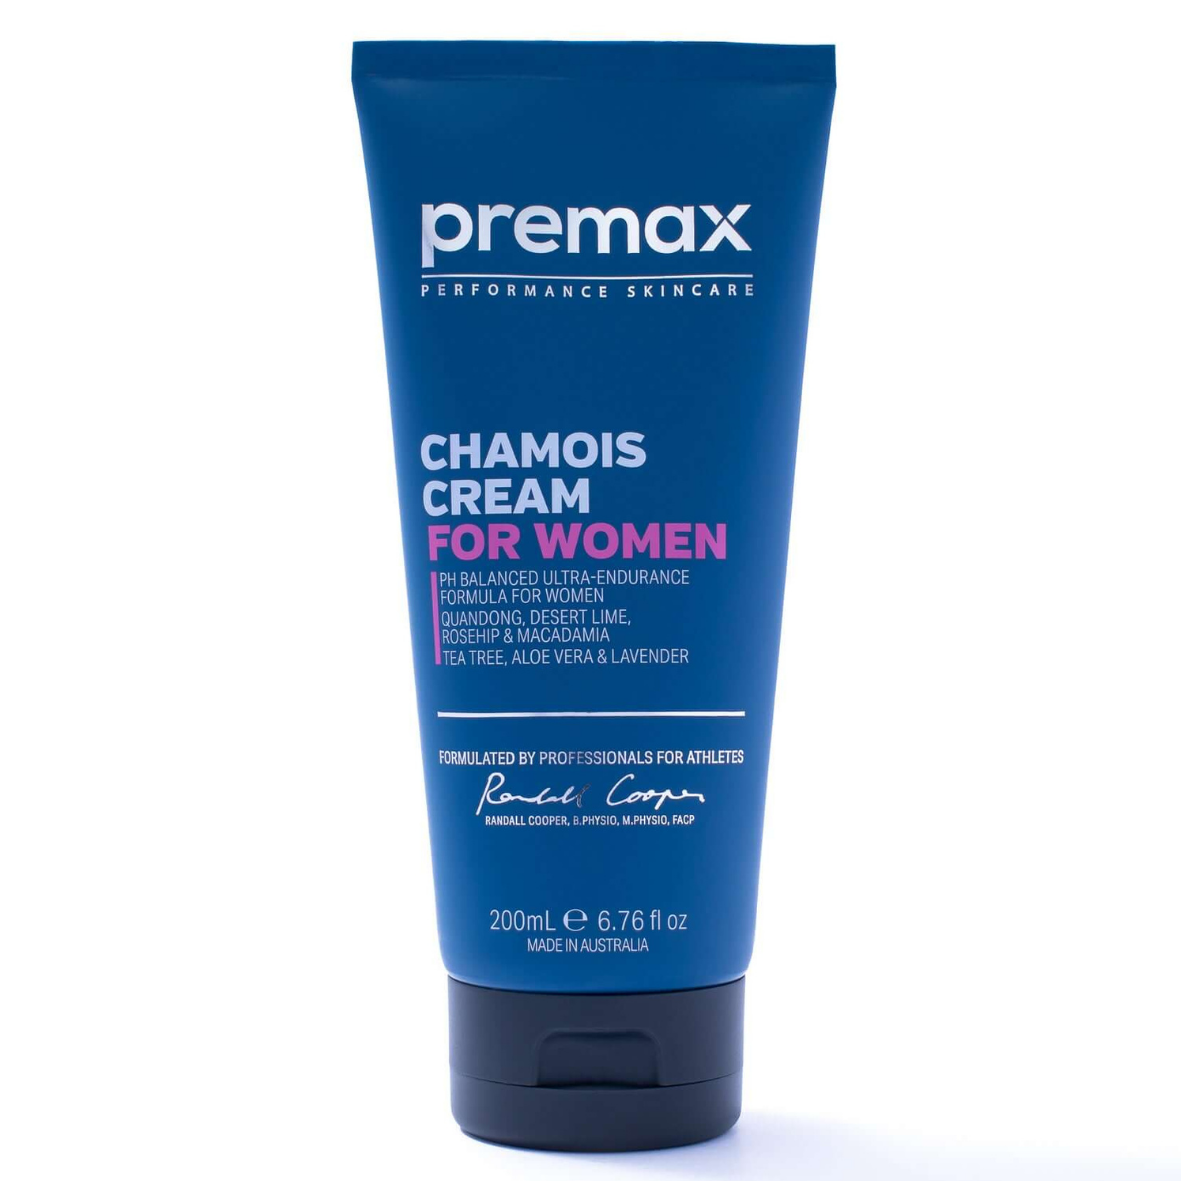 Premax Chamois Cream for women